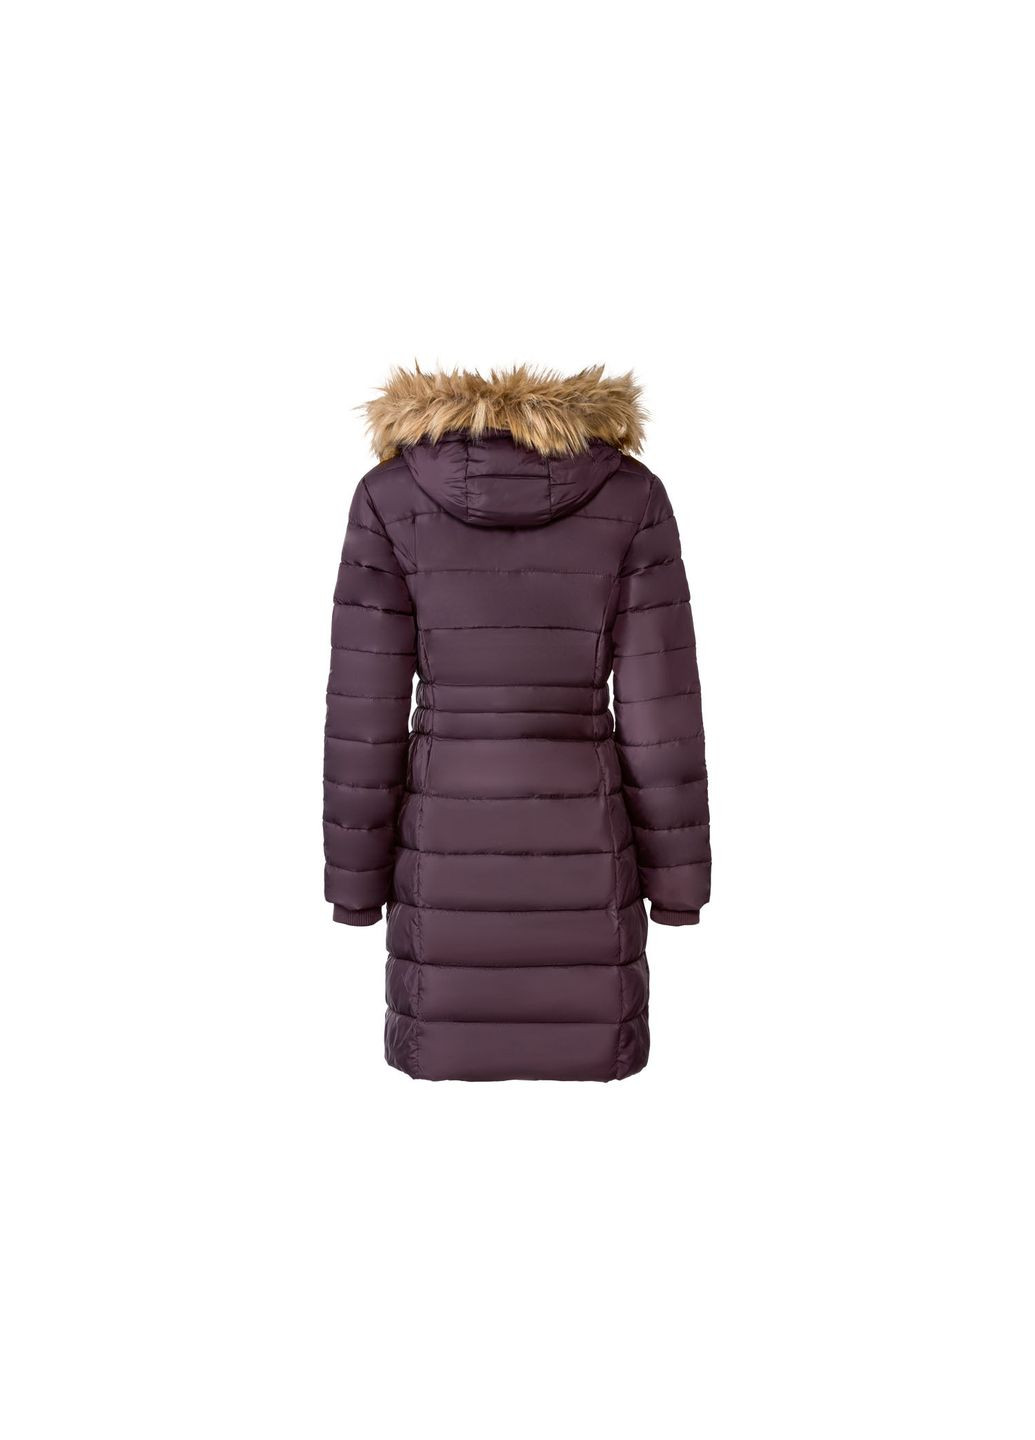 Фиолетовая демисезонная куртка демисезонная водоотталкивающая и ветрозащитная для женщины 362839 Esmara